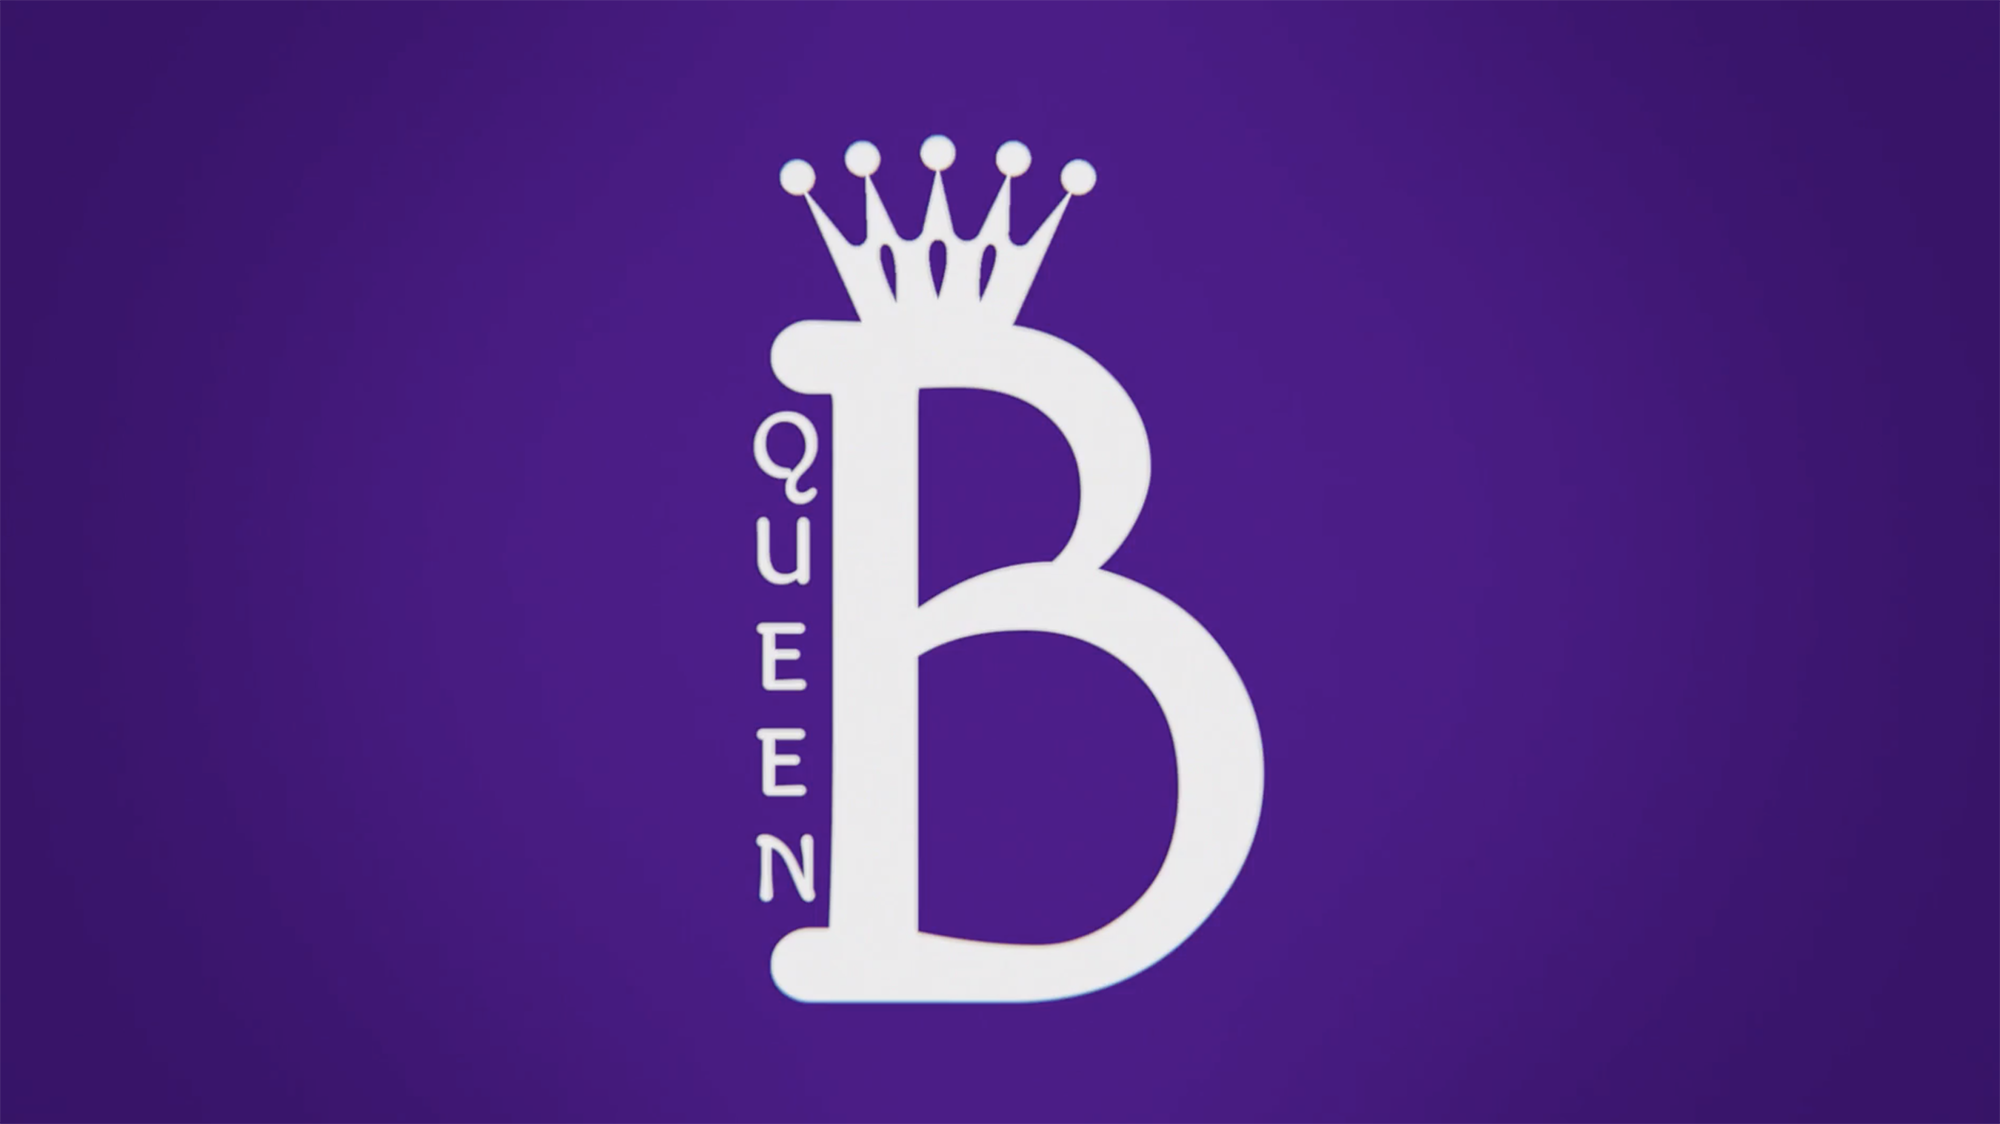 (c) Queenbmarketing.co.uk